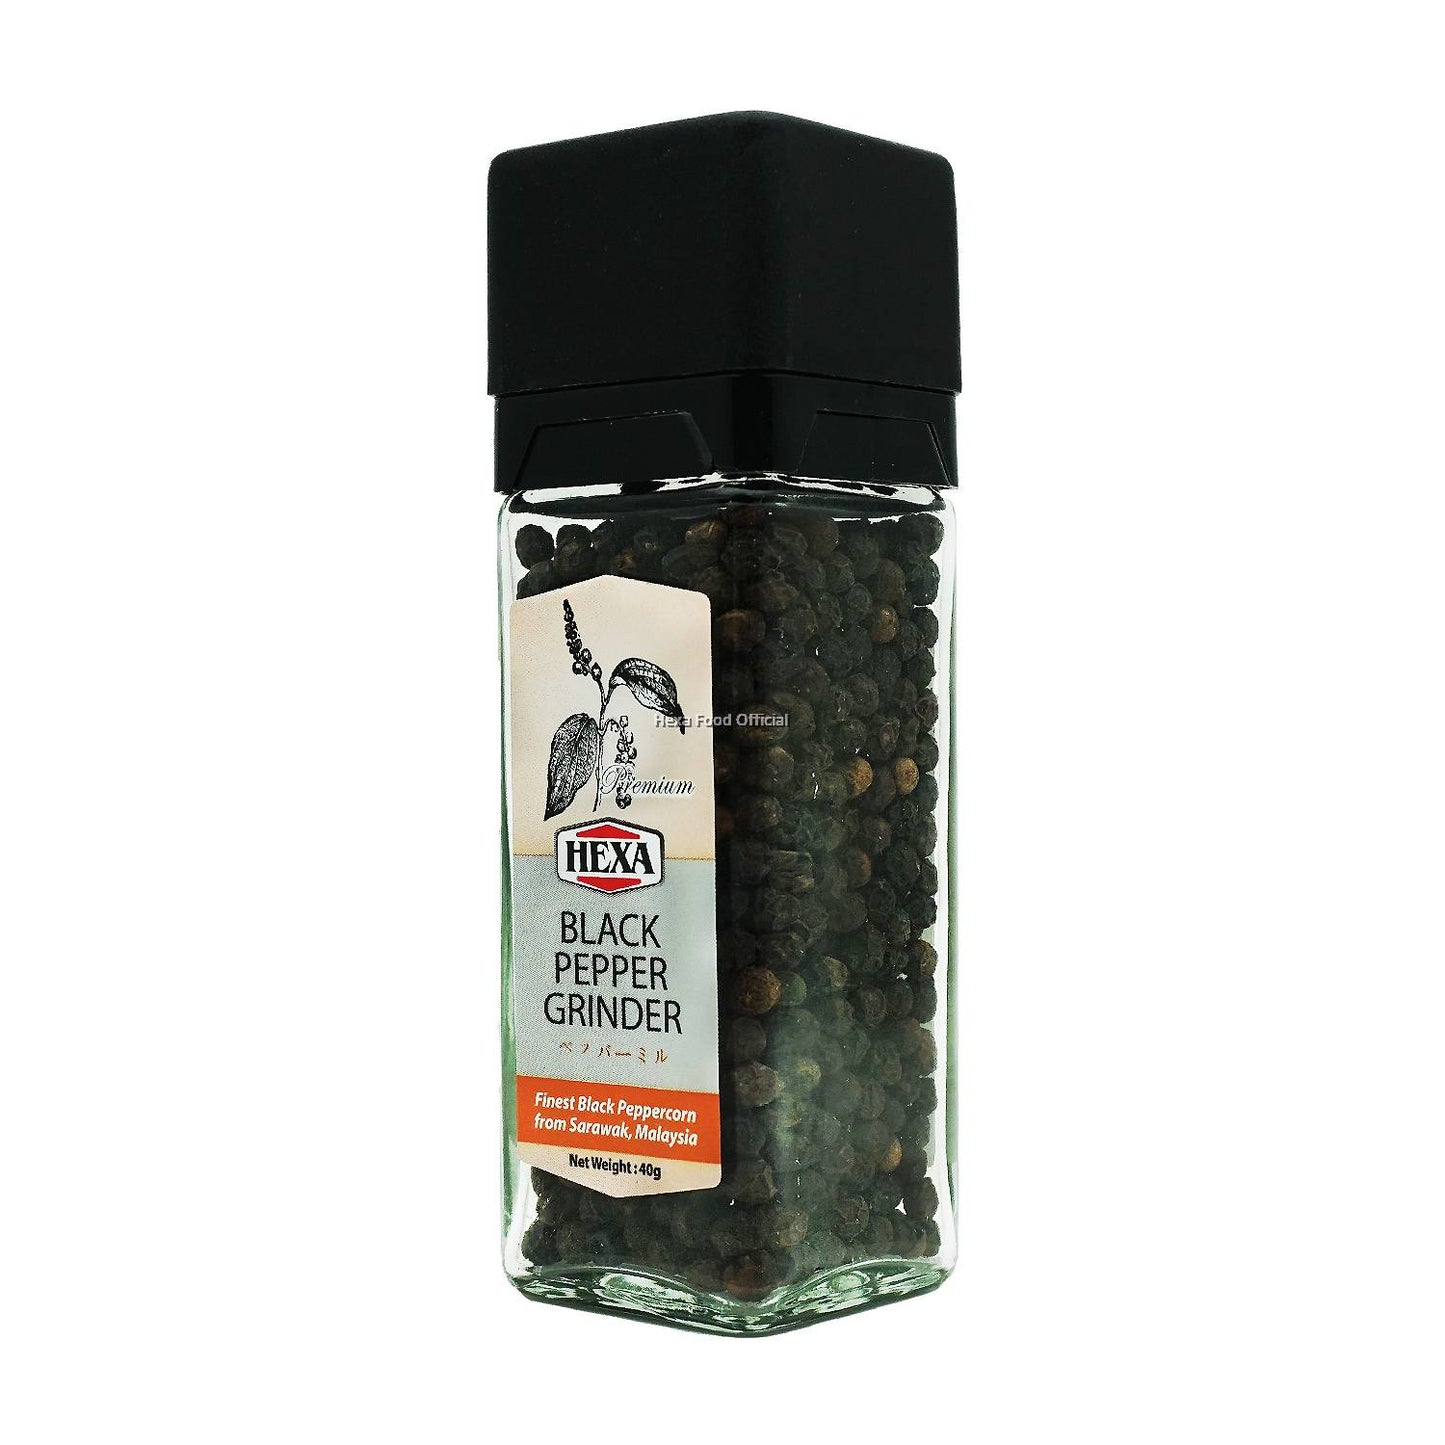 HEXA HALAL Black Pepper With Grinder (Glass Jar) 40gm